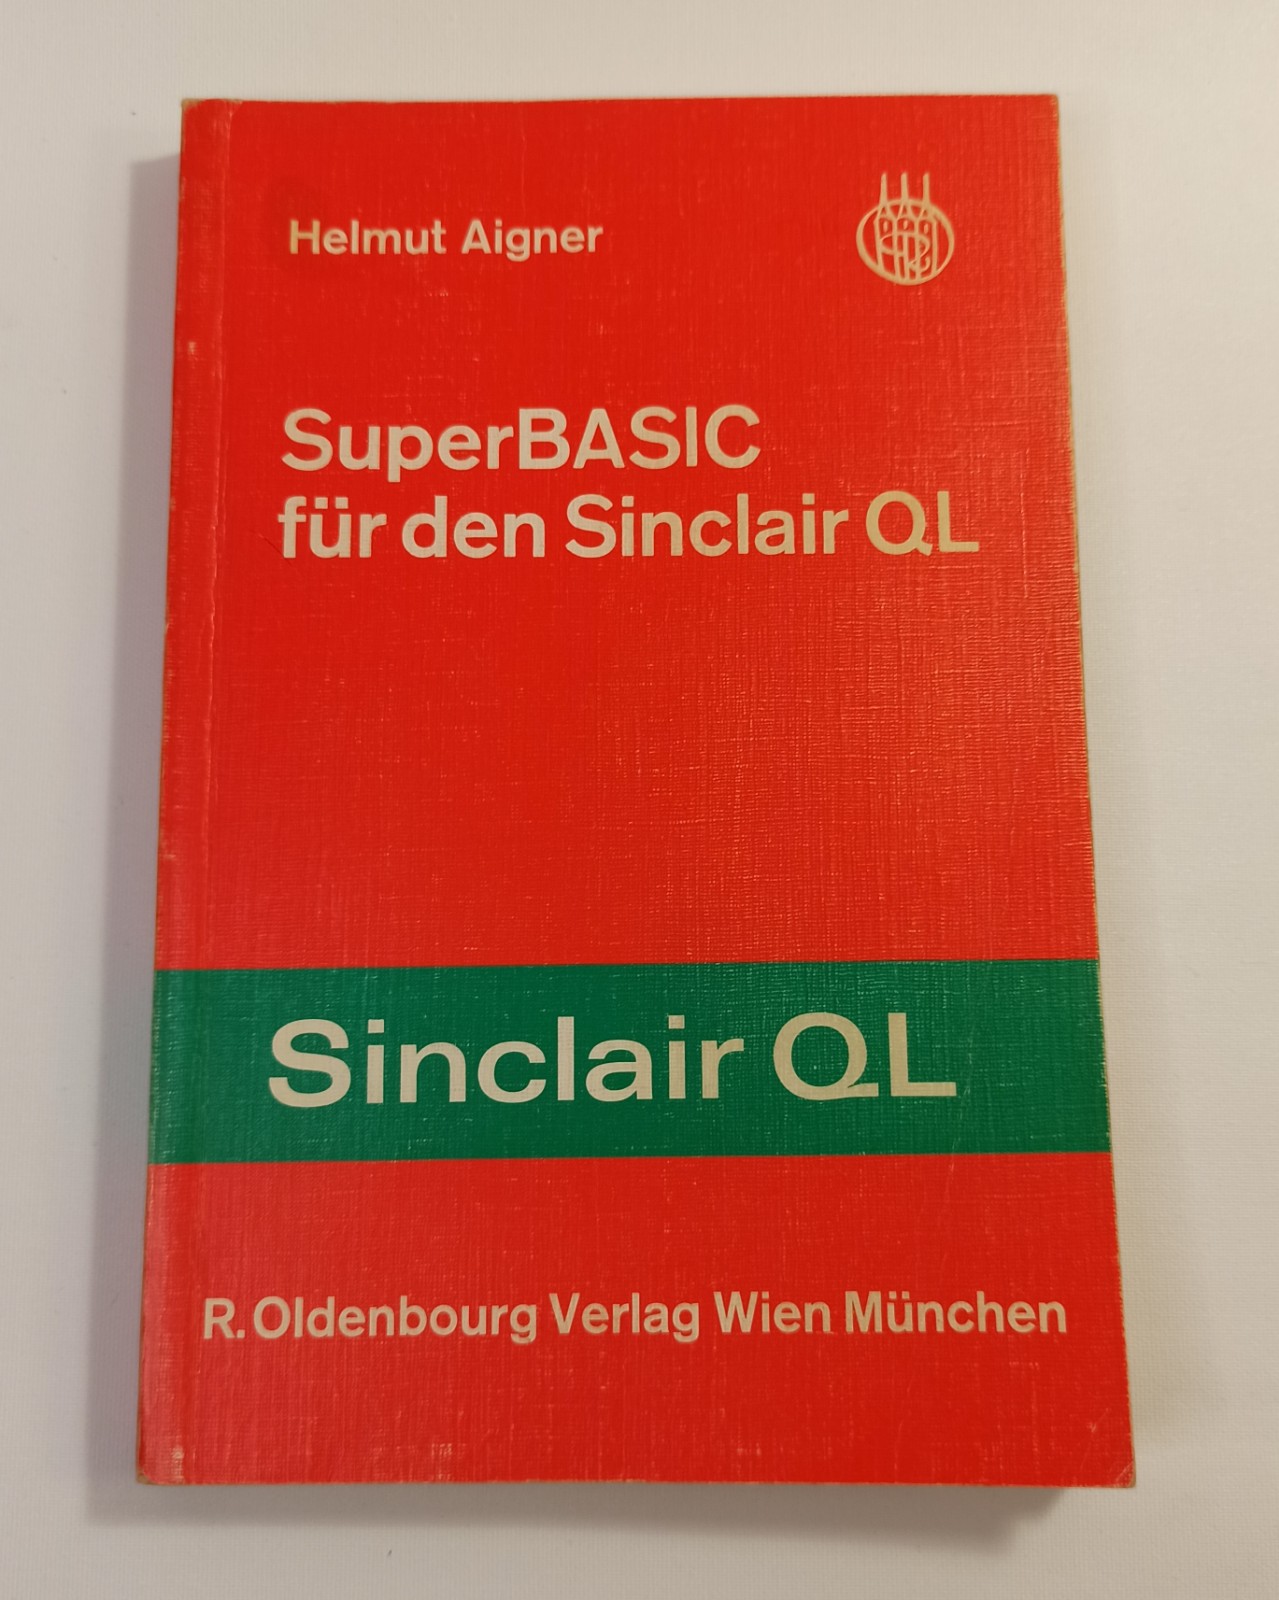 Sinclair QL Super BASIC